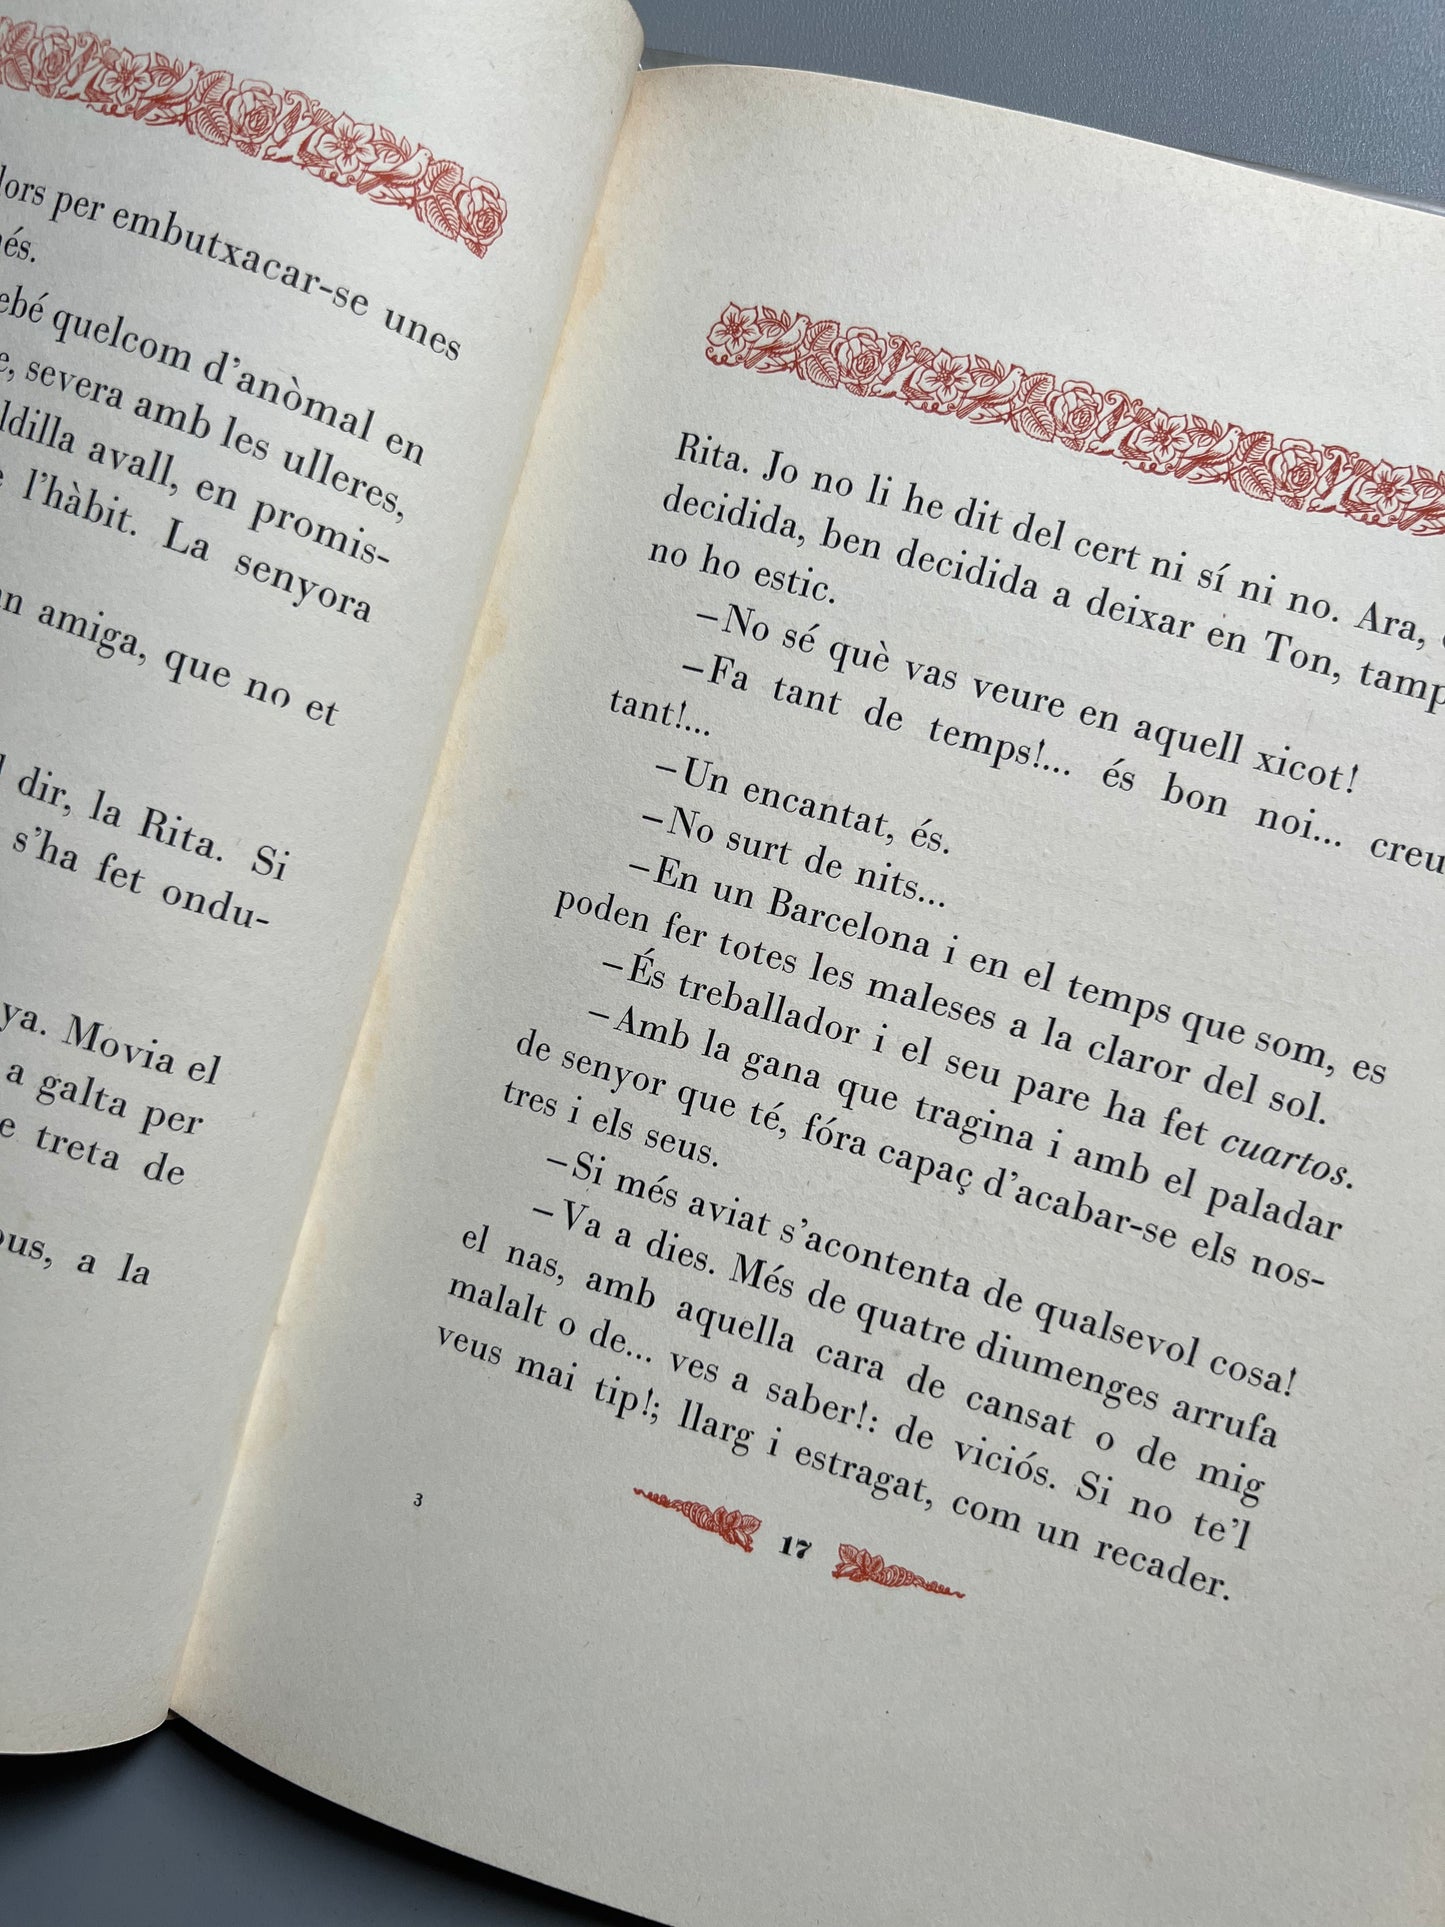 El premi a la virtut, Miquel Llor - Llibreria de Verdaguer, 1935